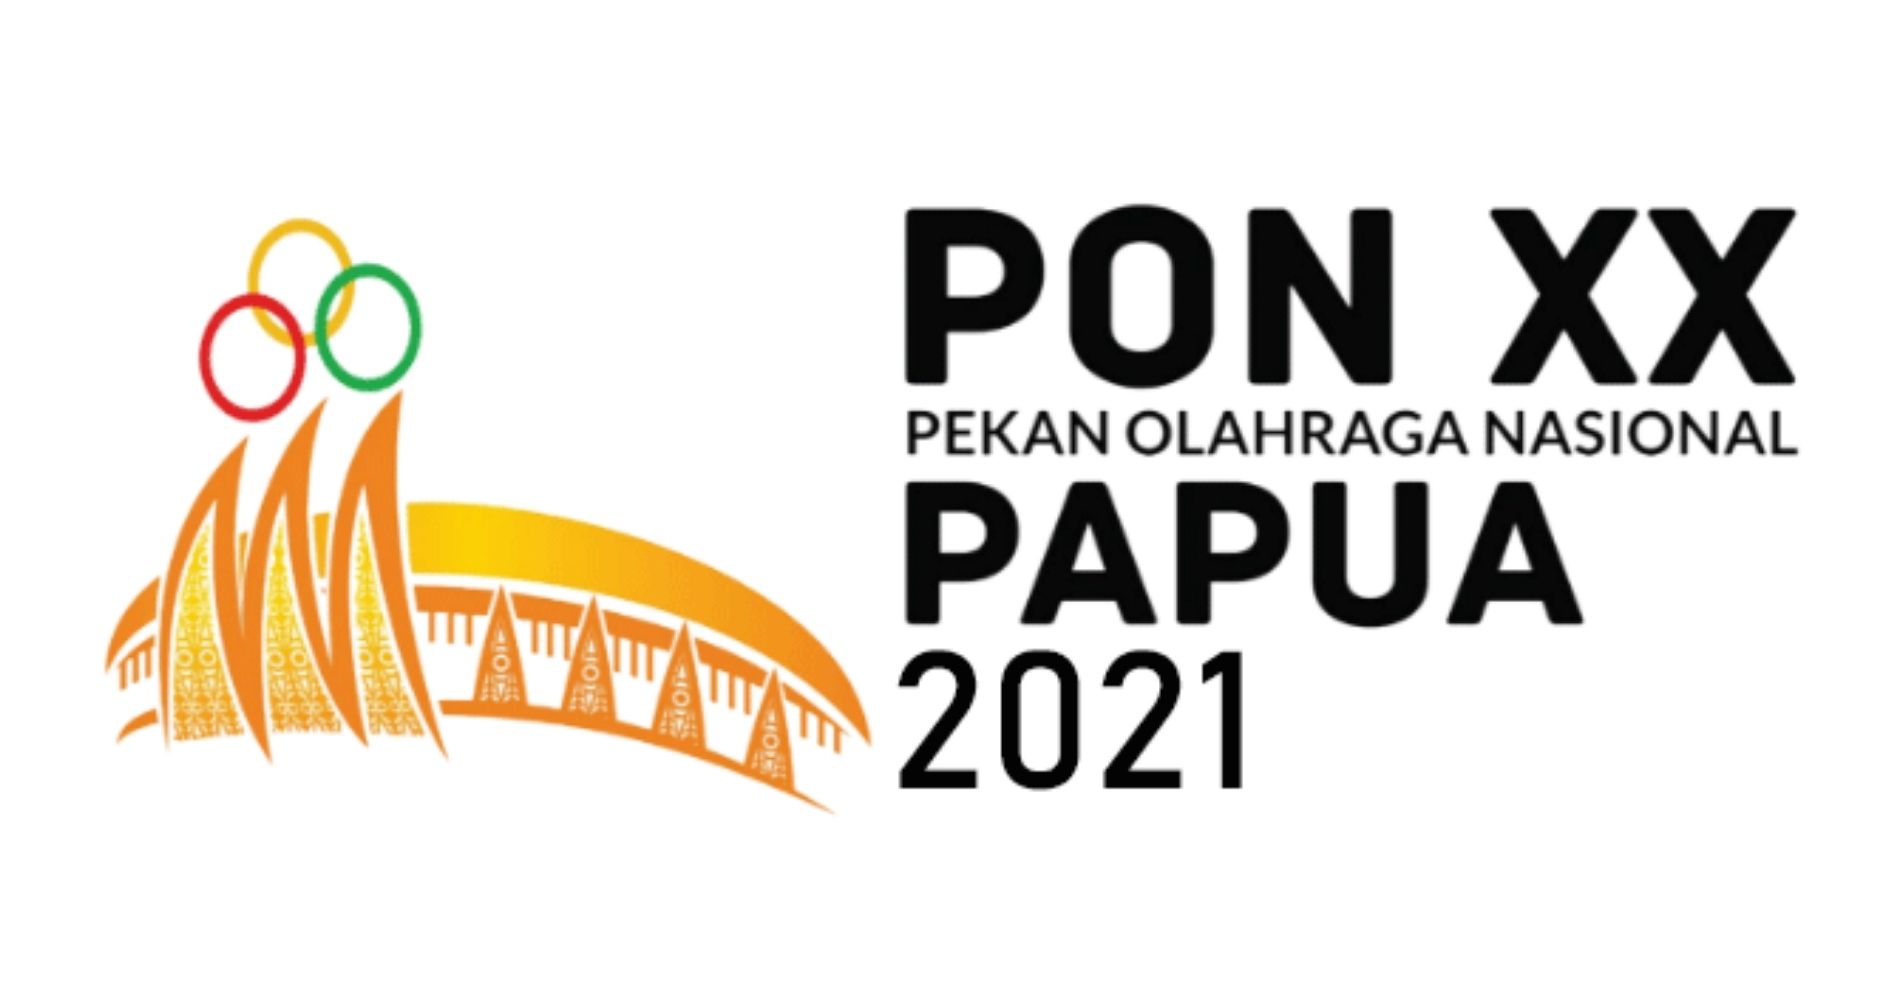 PON XX Papua 2021 Illustration Web Bisnis Muda - Image: Laman Resmi PON XX Papua